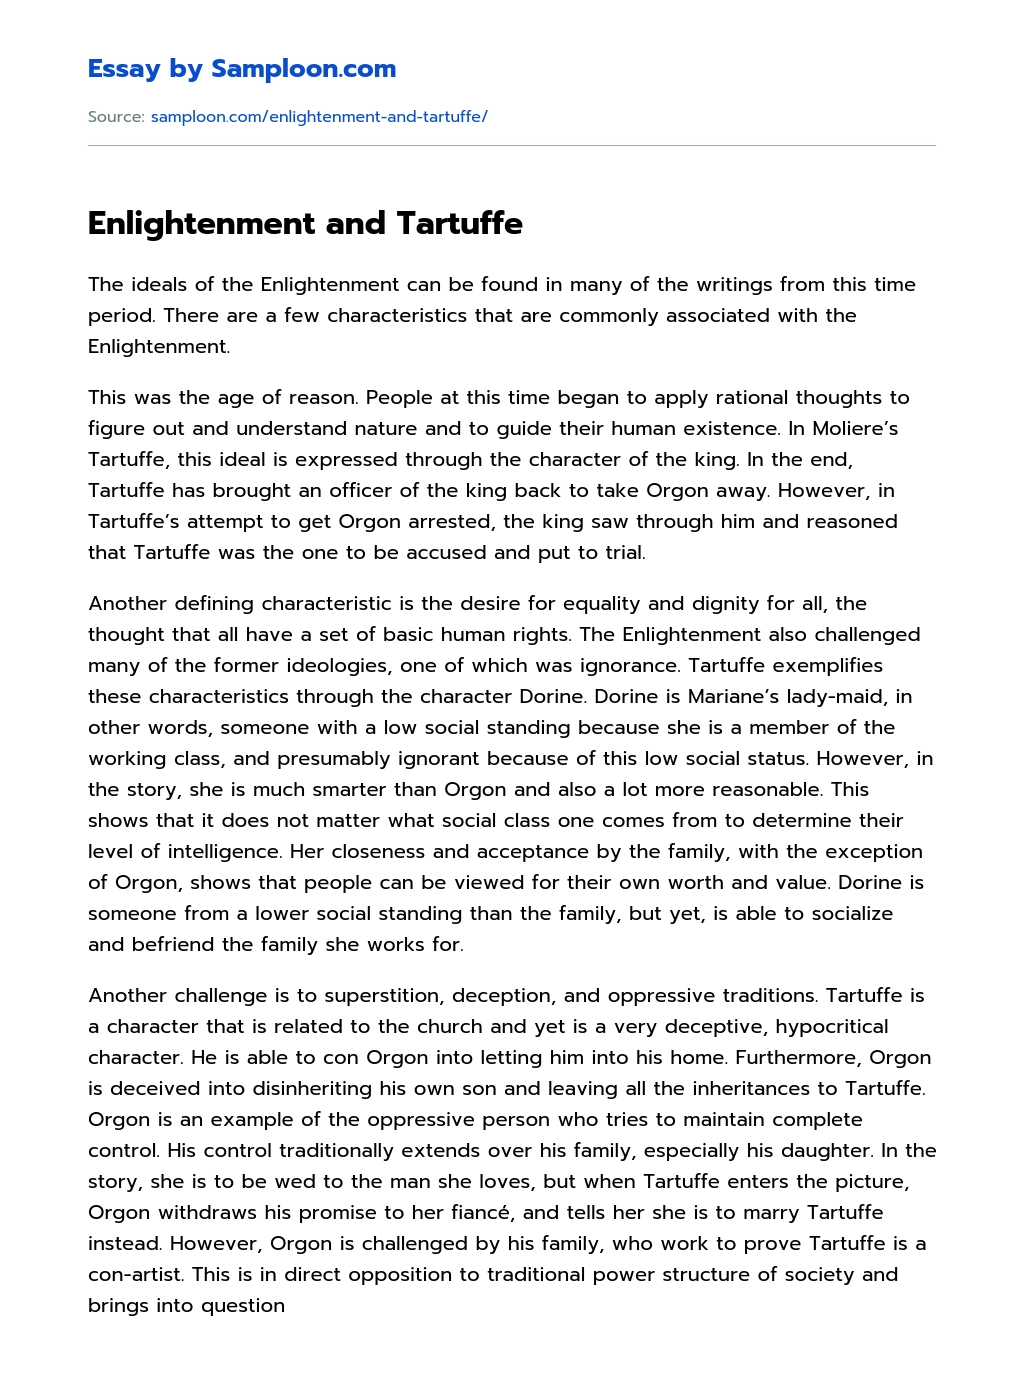 Enlightenment and Tartuffe essay